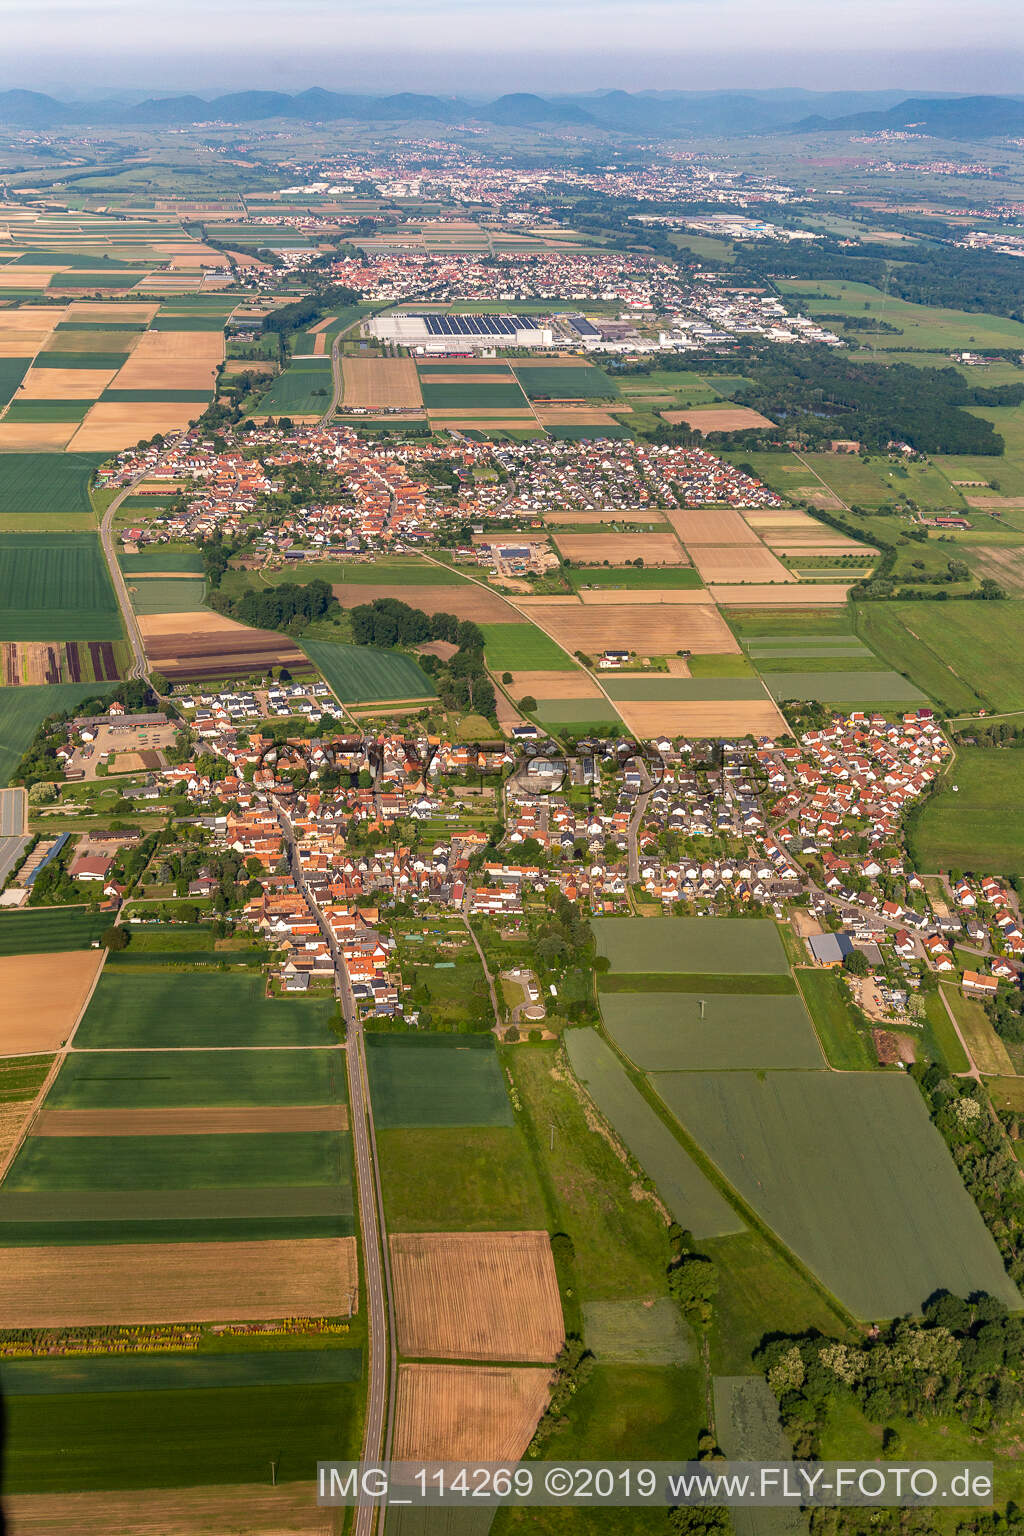 Vue aérienne de Vue de la ville de Knittelheim, Ottersheim près de Landau et Offenbach an der Queich à Knittelsheim dans le département Rhénanie-Palatinat, Allemagne